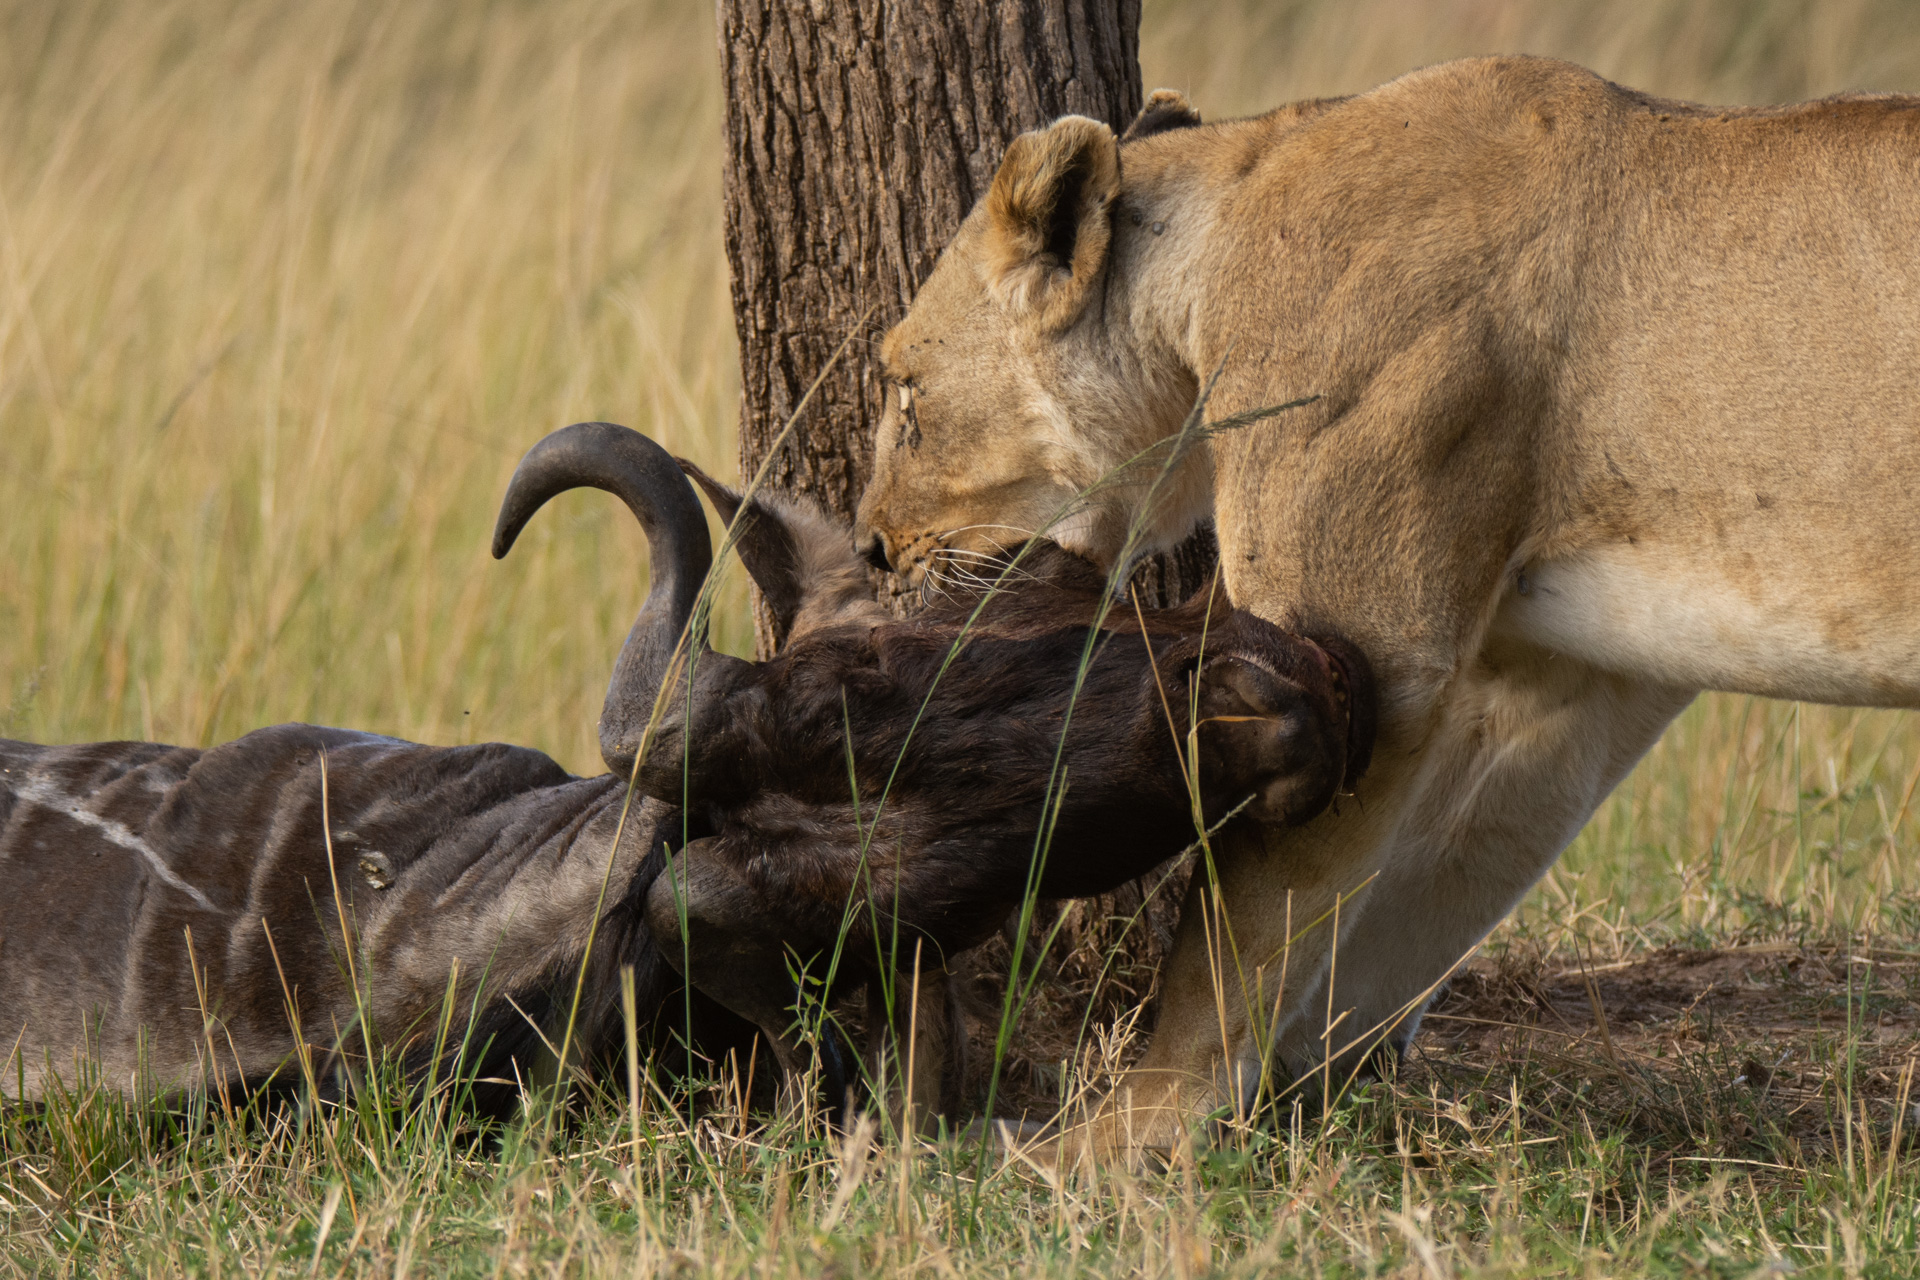 Lioness dragging wildebeest